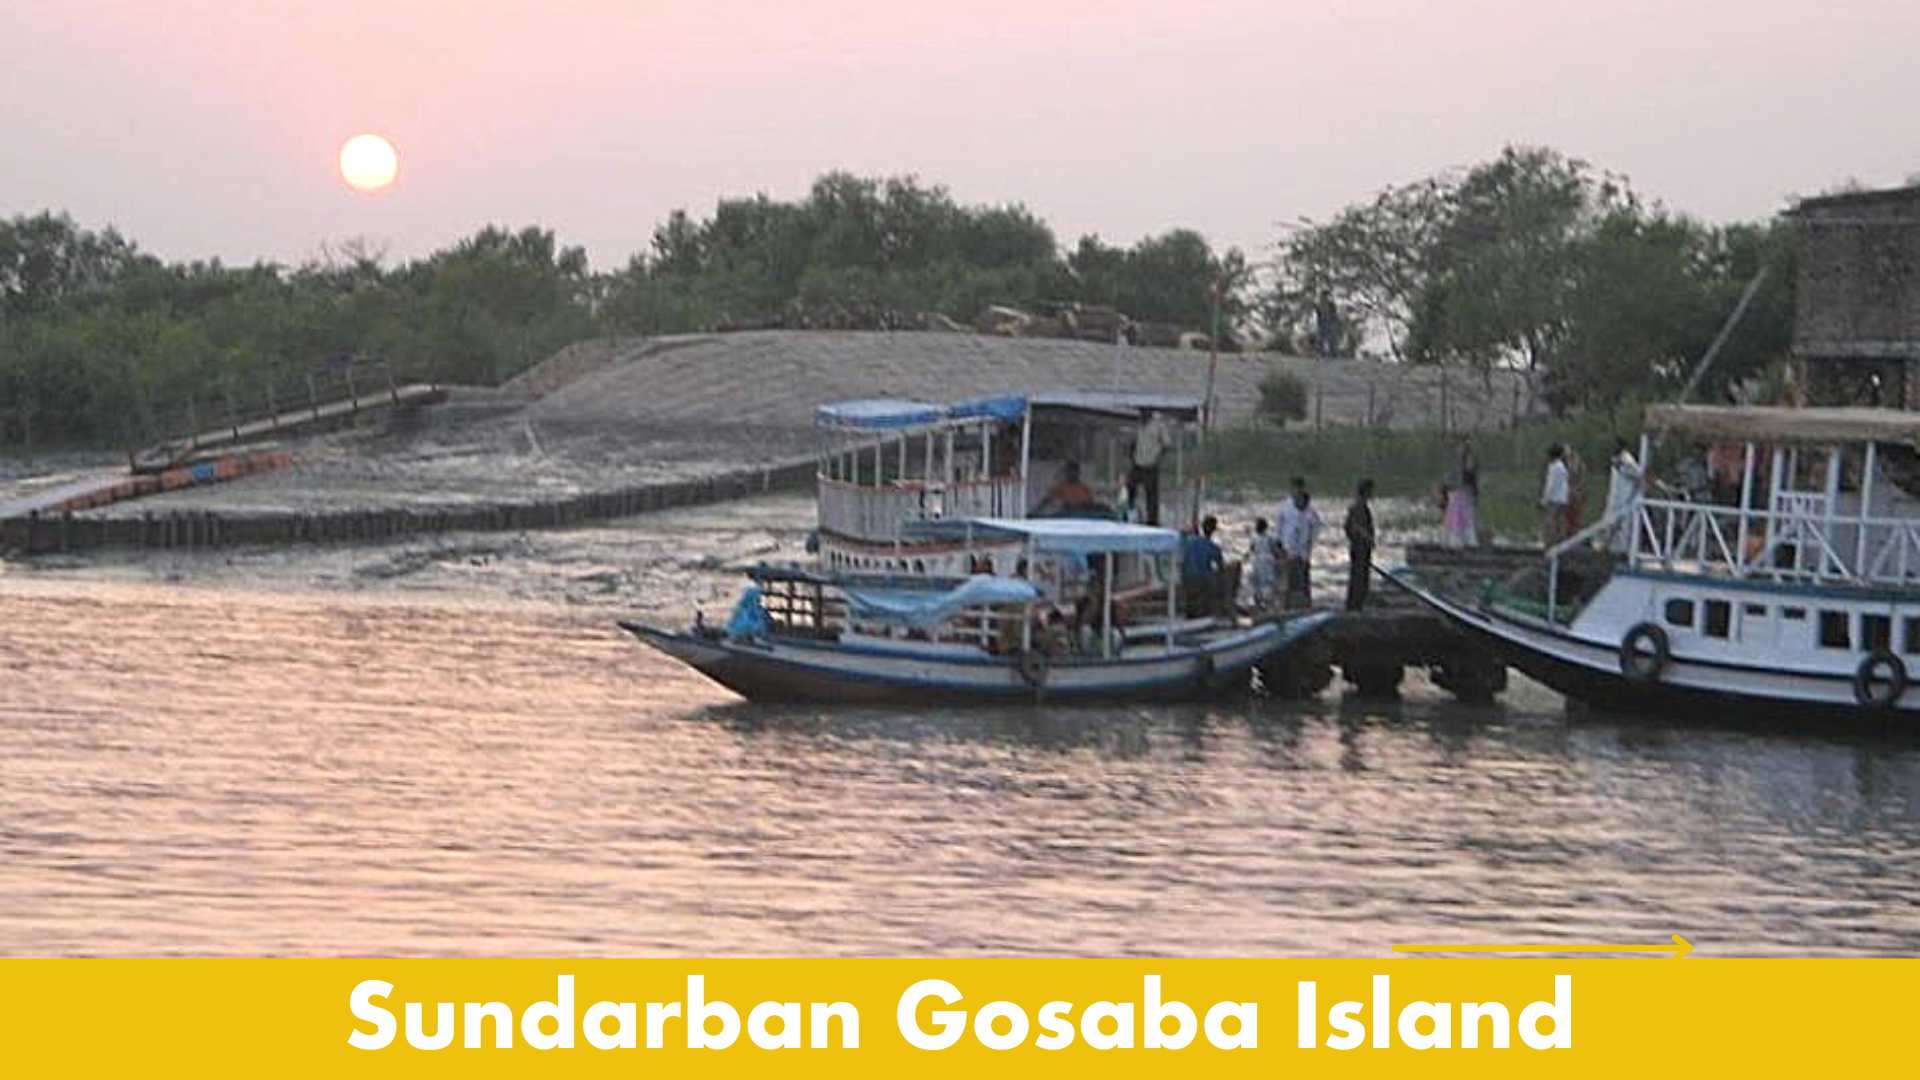 Sundarban Tour 1 Night 2 Days